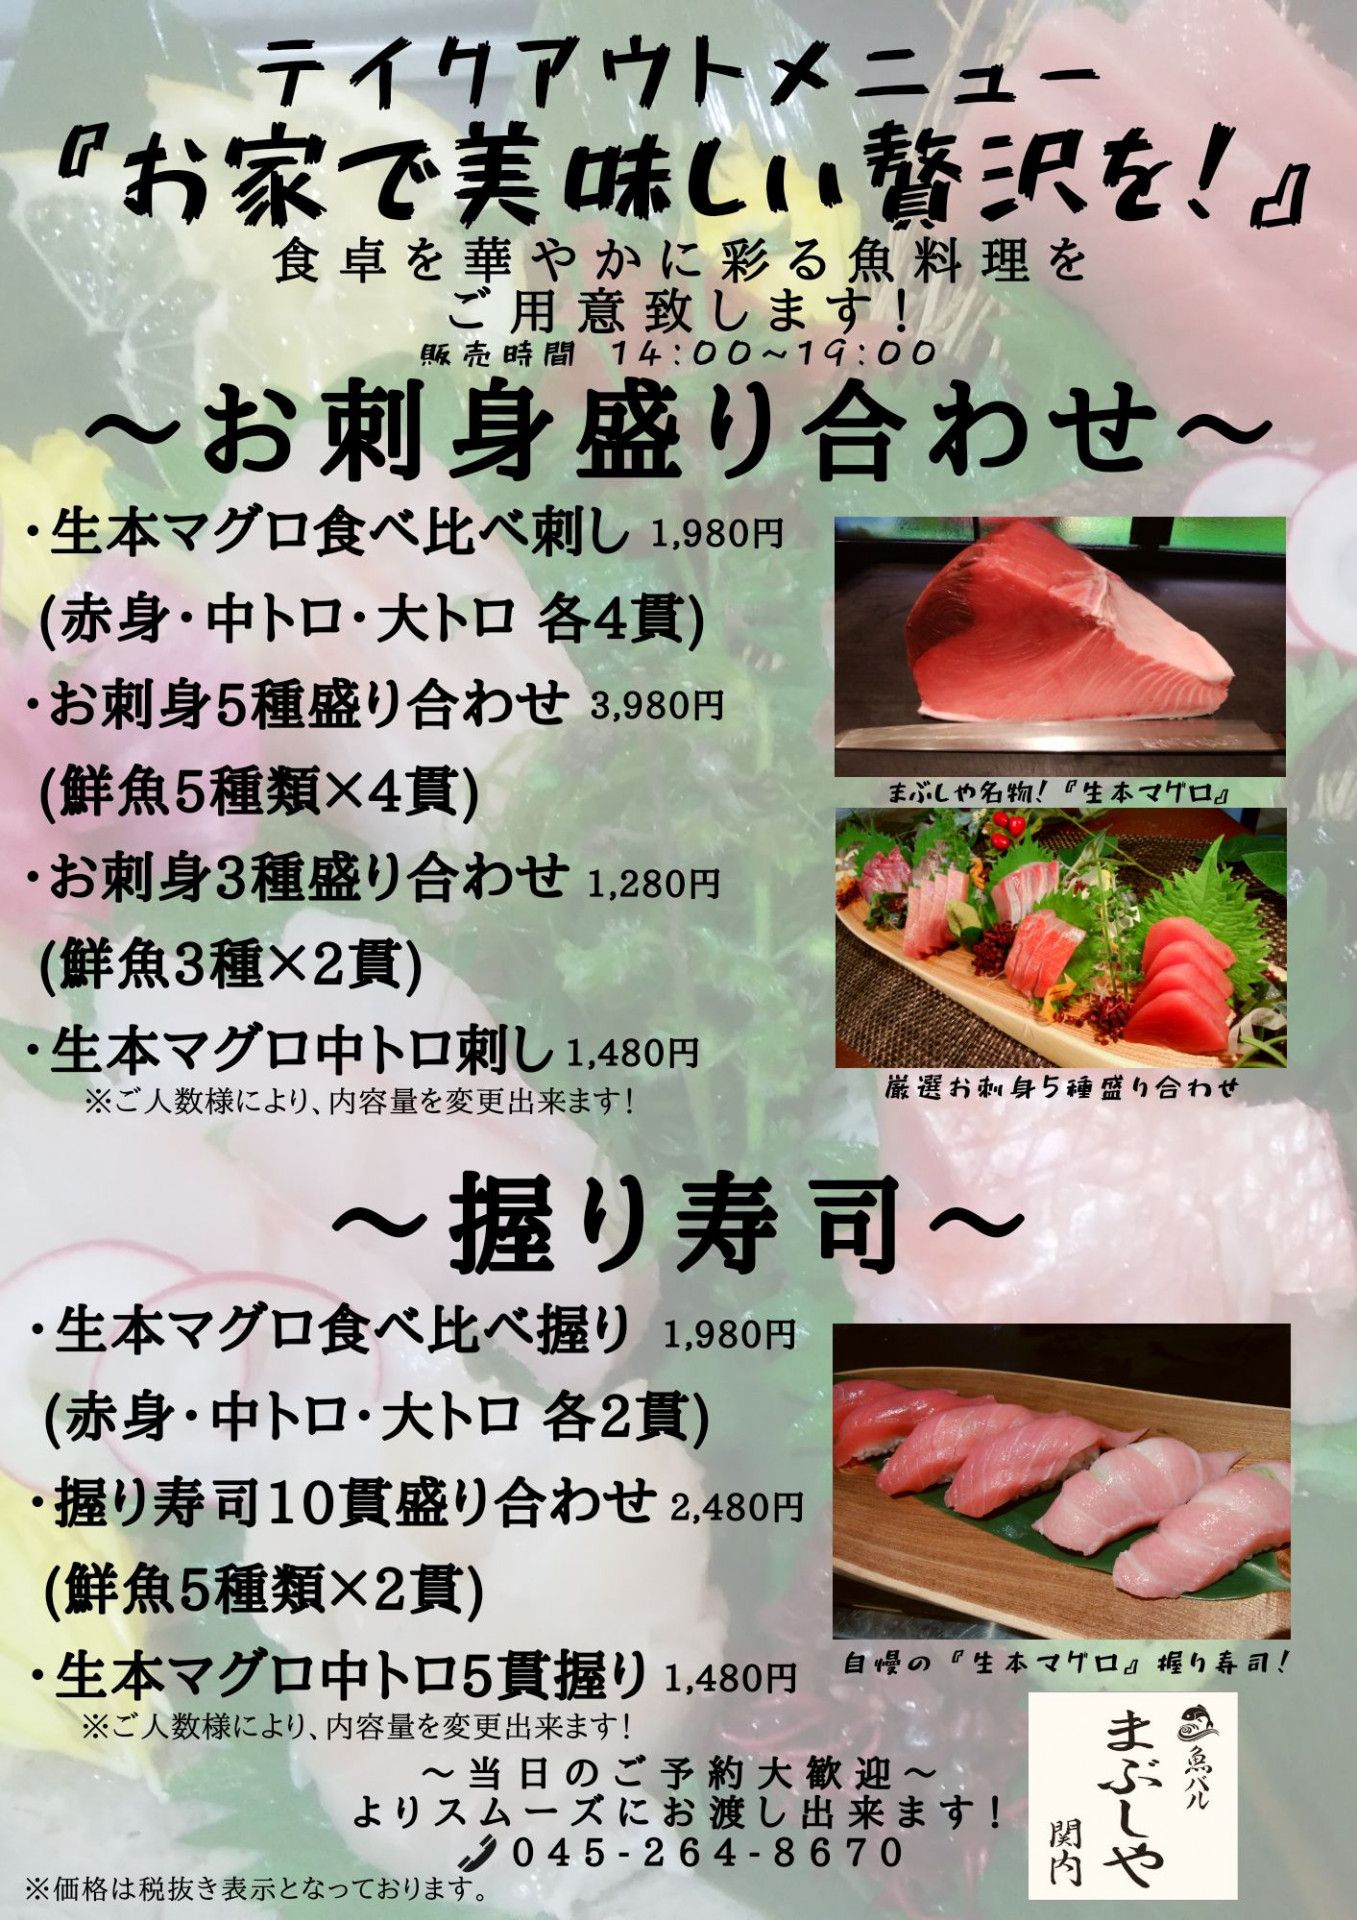 お寿司 刺身 テイクアウトメニュー ブログ 関内の海鮮居酒屋をお探しなら 魚バル まぶしや 関内